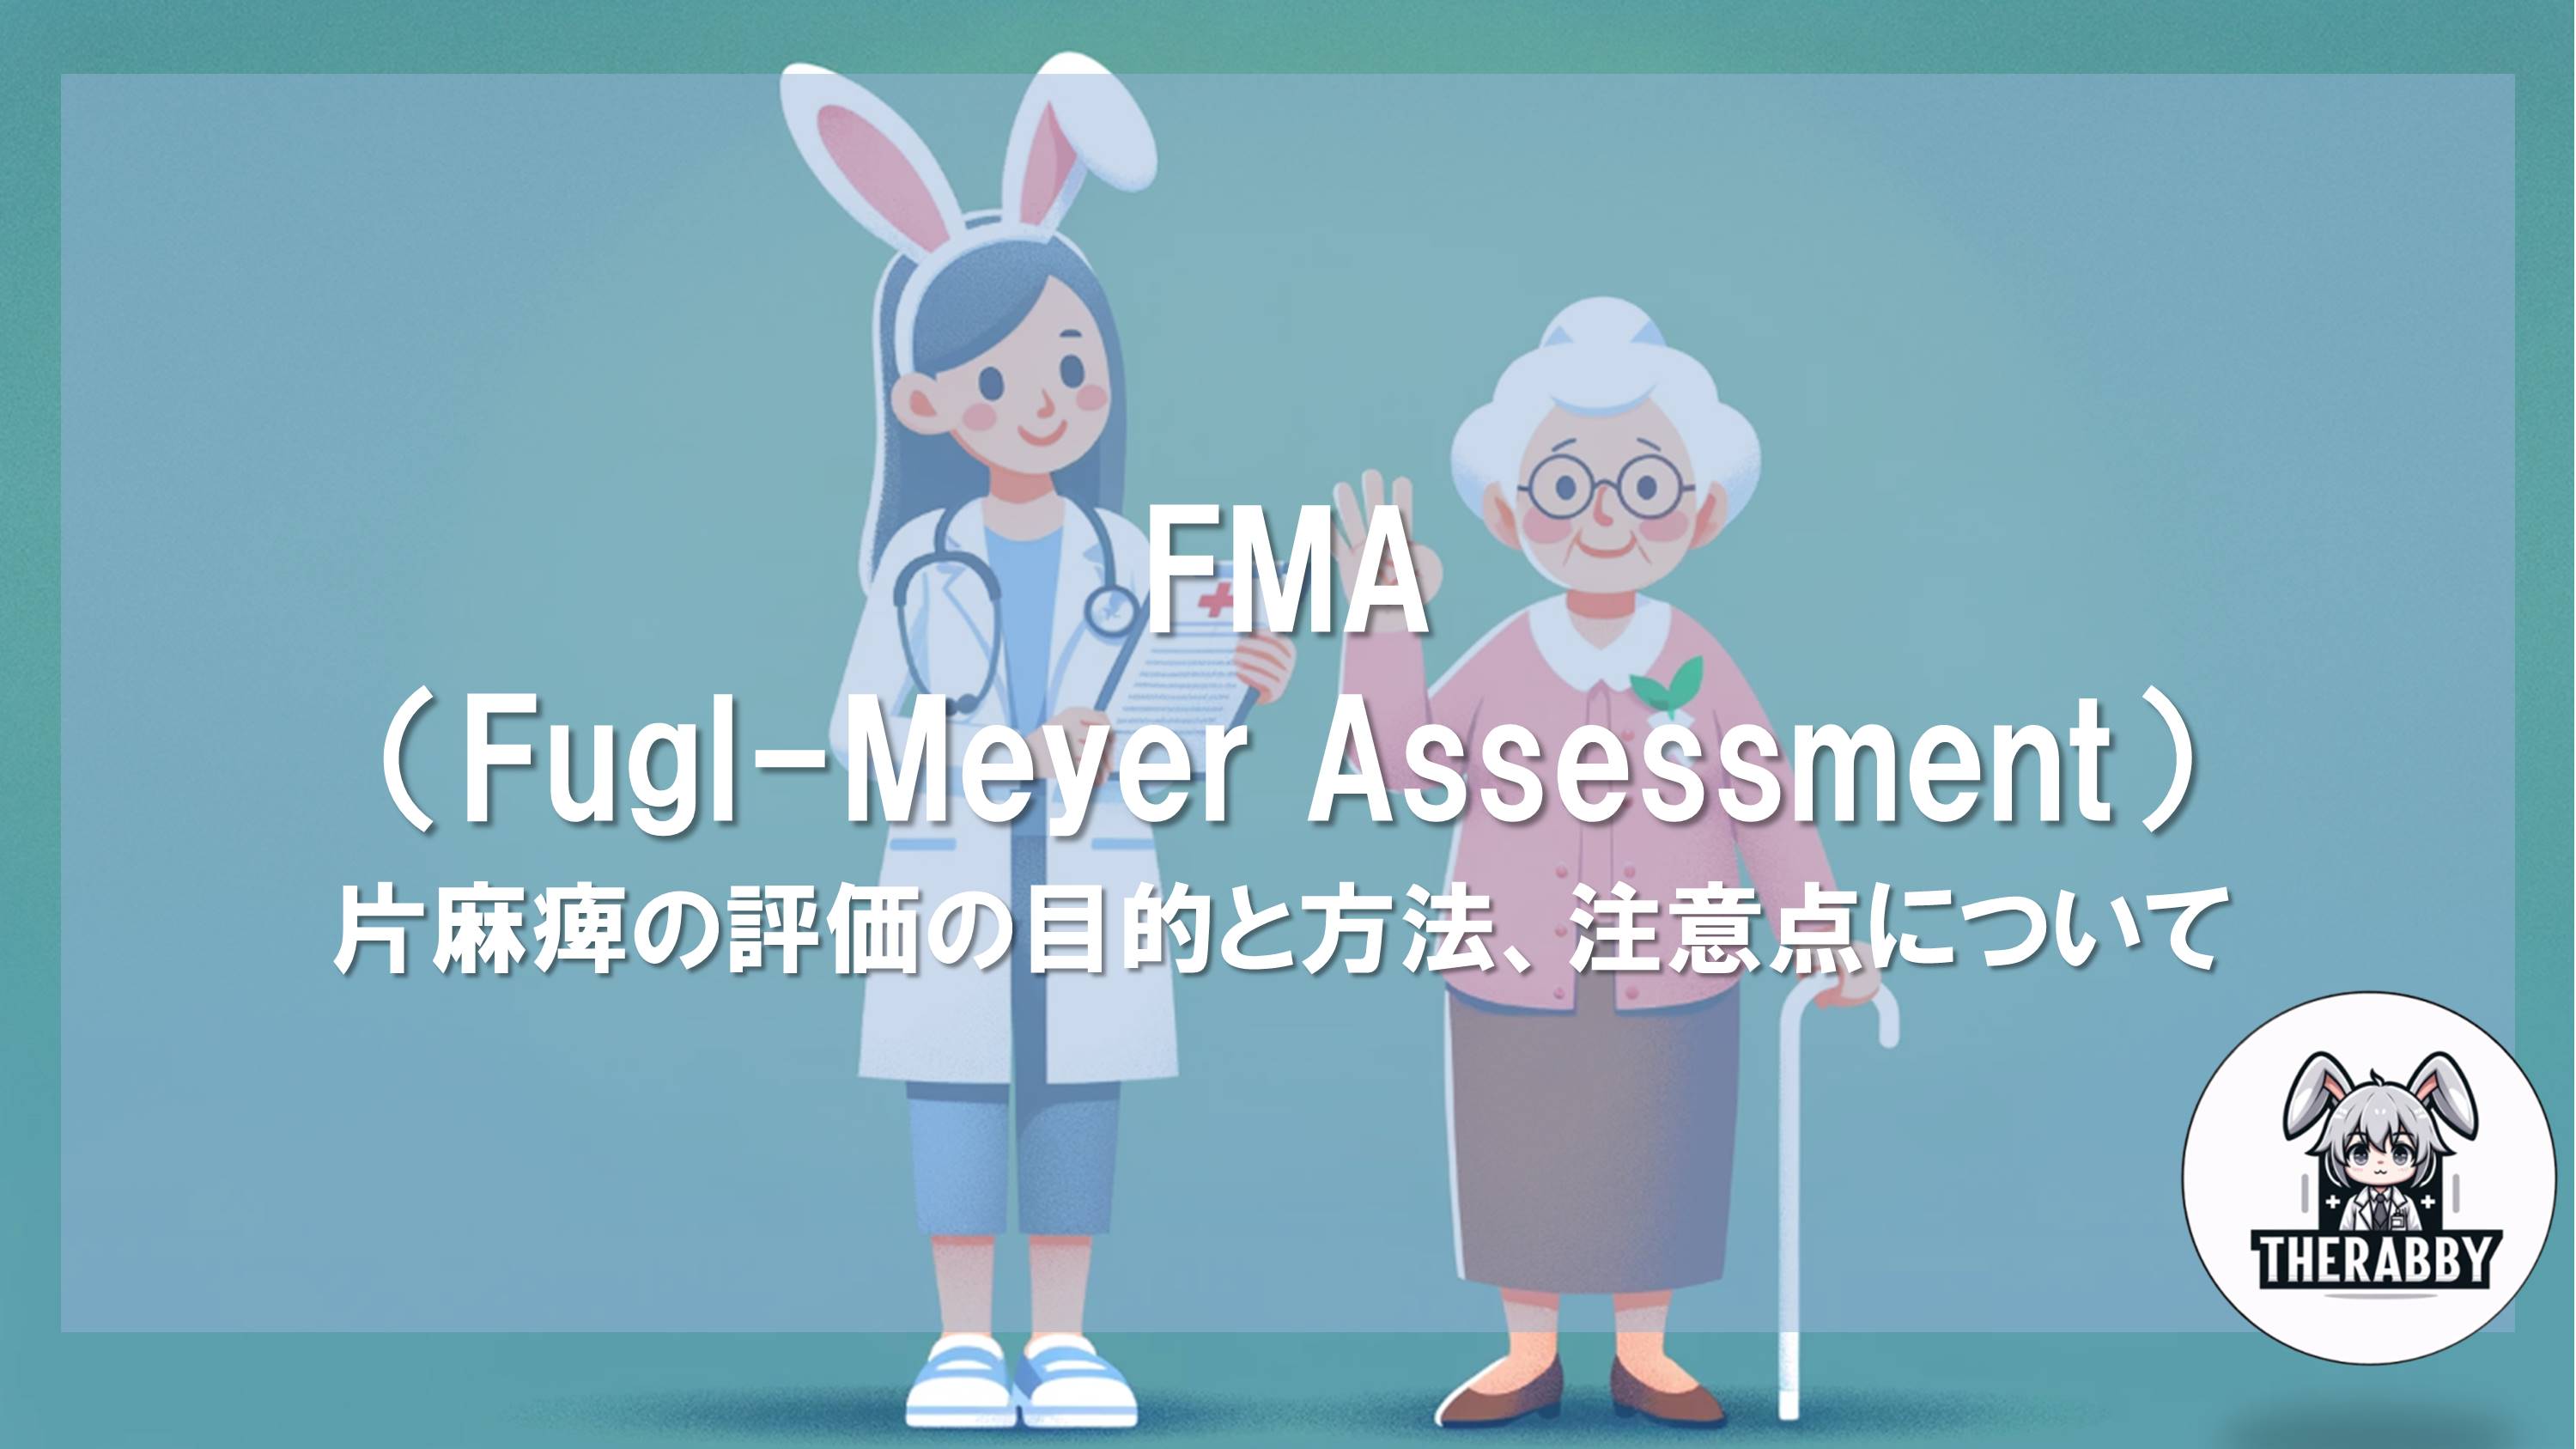 FMA（Fugl-Meyer Assessment） - 片麻痺の評価の目的と方法、注意点について